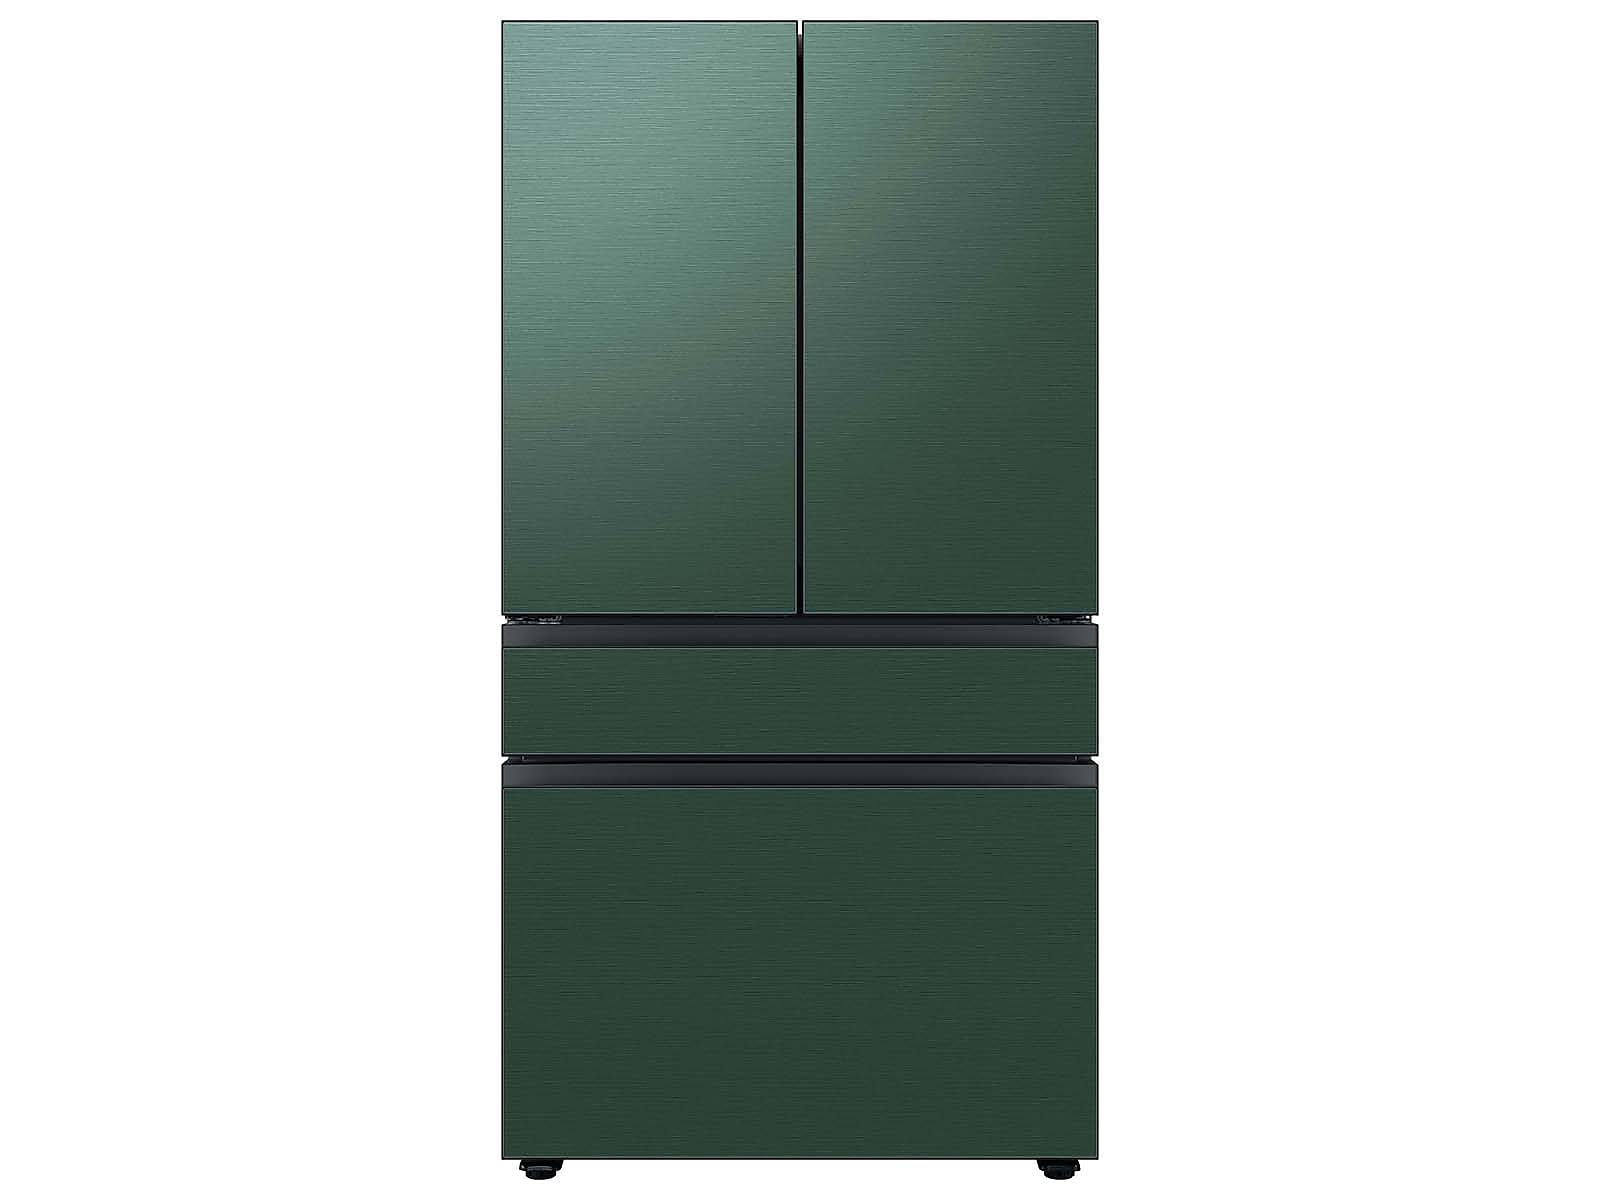 Samsung Bespoke 4-Door French Door Refrigerator in White Glass (29 cu. ft.) with Customizable Door Panel Colors and Beverage Center™ in Emerald Green Steel